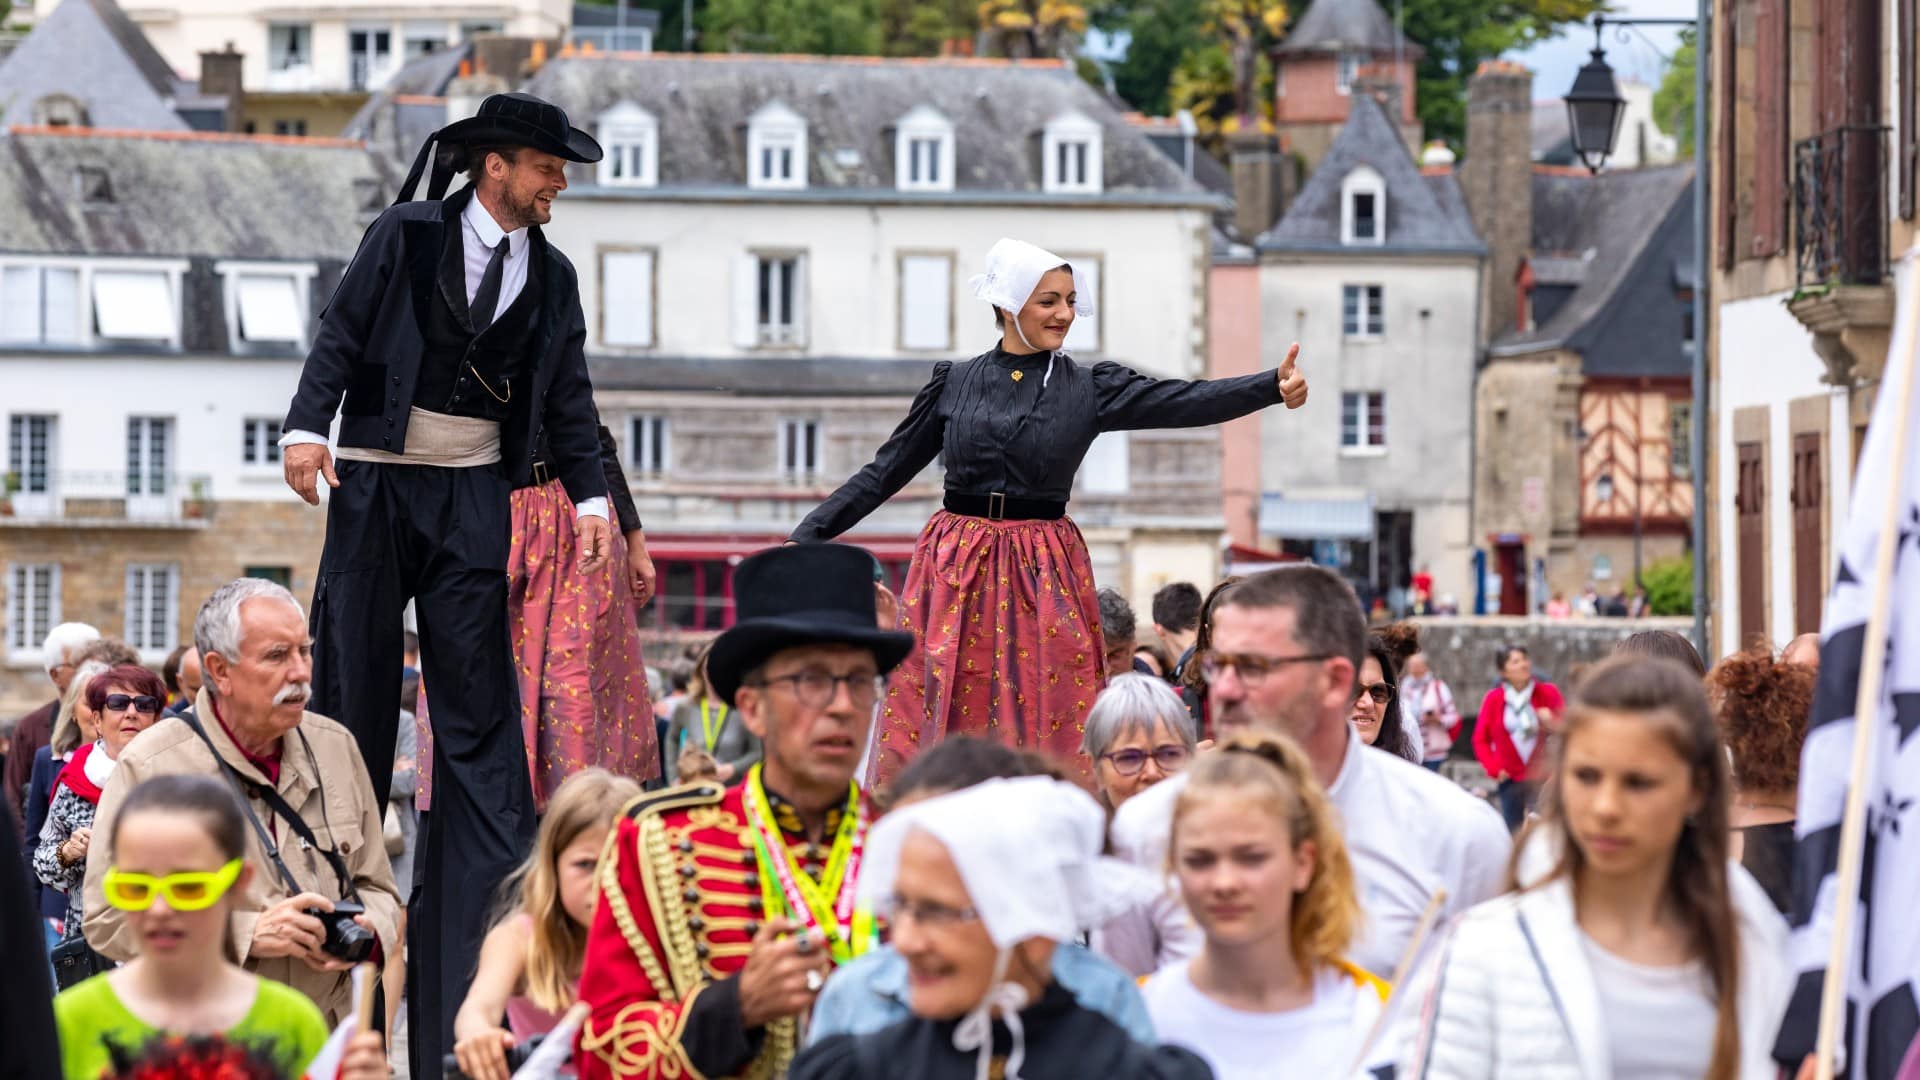 Danseurs bretons parmi la foule pendant la Fête de la Bretagne 2019